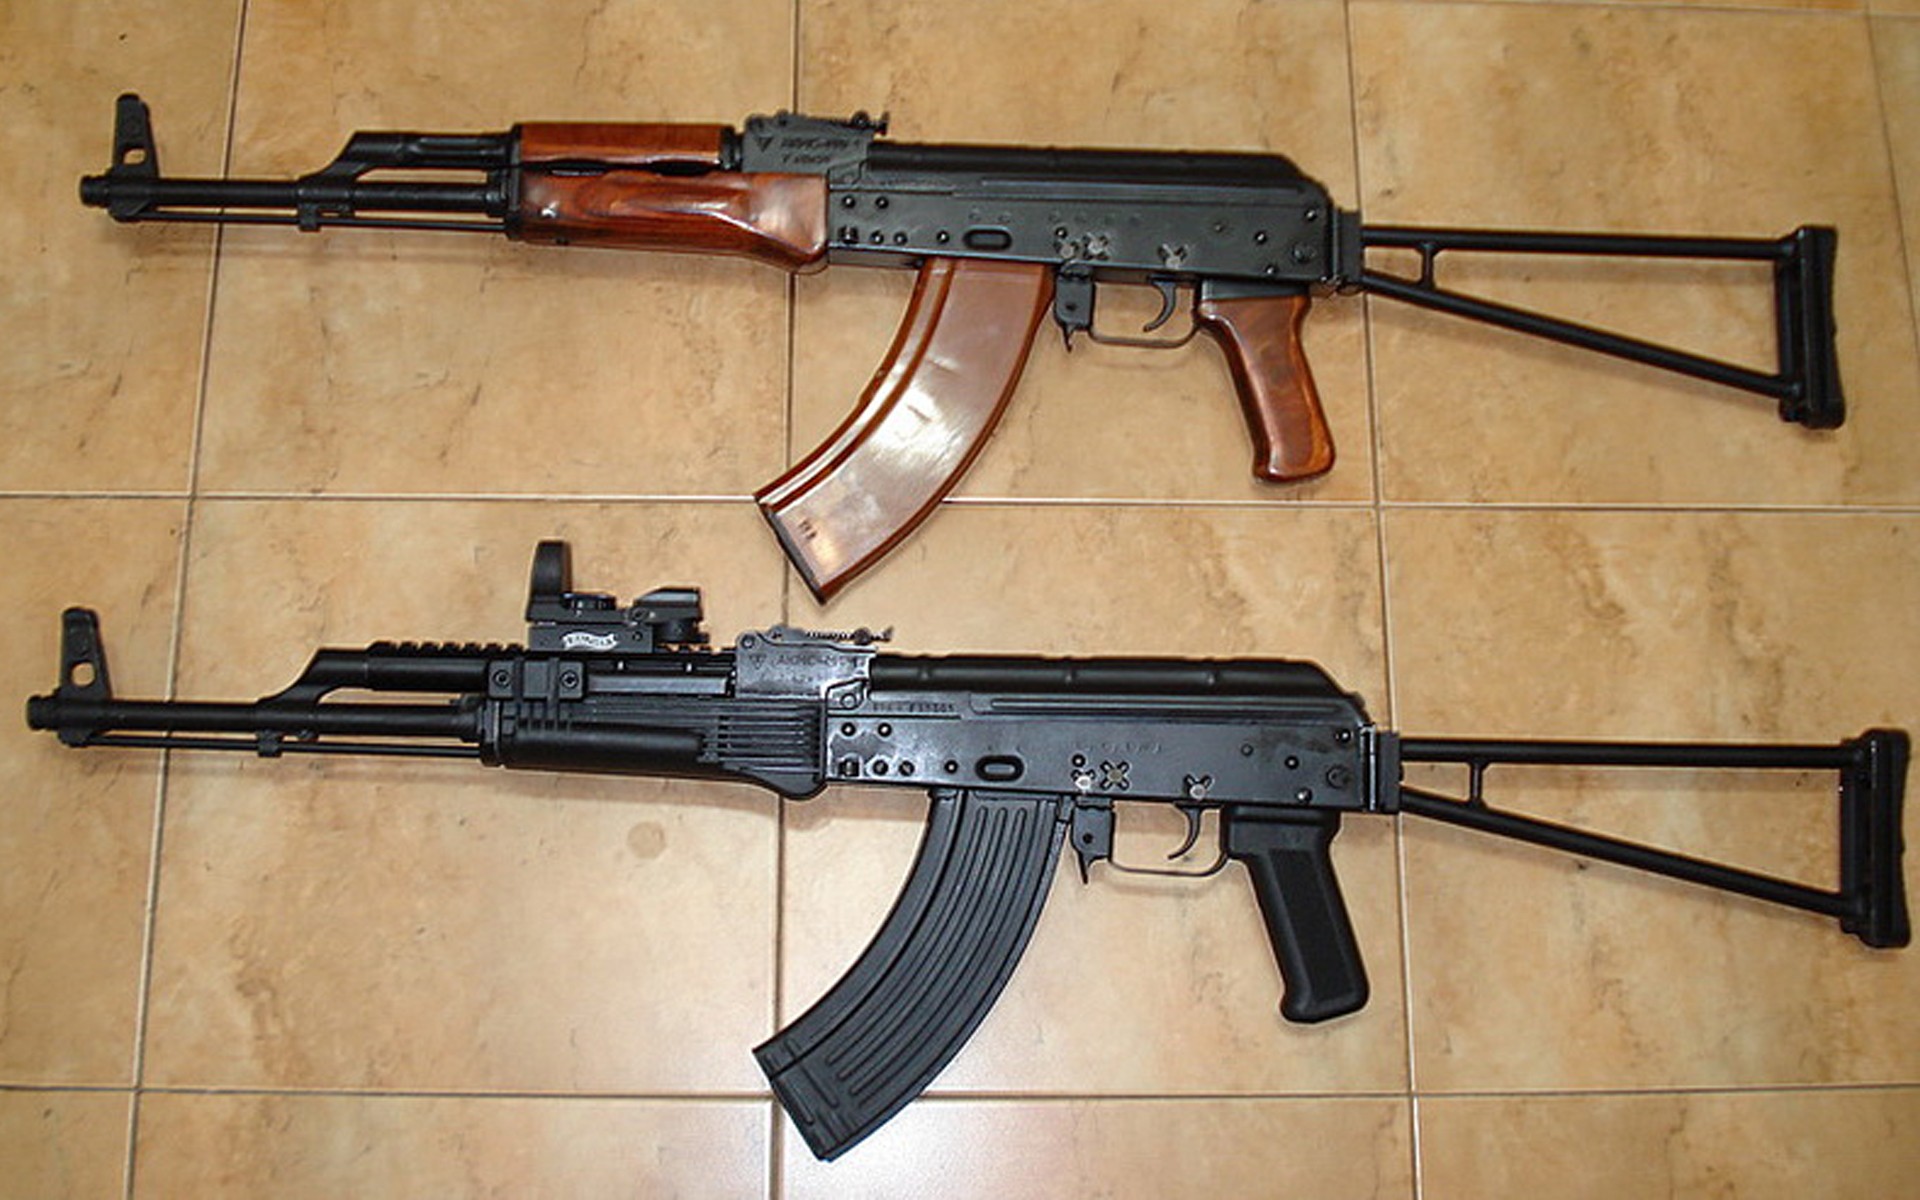 Lấy cảm hứng từ súng trường tấn công STG-44 của Đức Quốc xã, AK-47 dễ sử dụng, giá rẻ và bền, nó là loại vũ khí phù hợp nhất đối với những người lính nghĩa vụ của Liên Xô và các nước thuộc thế giới thứ 3. Trong 60 năm qua, AK-47 được cho là loại vũ khí hiệu quả nhất trên thế giới.